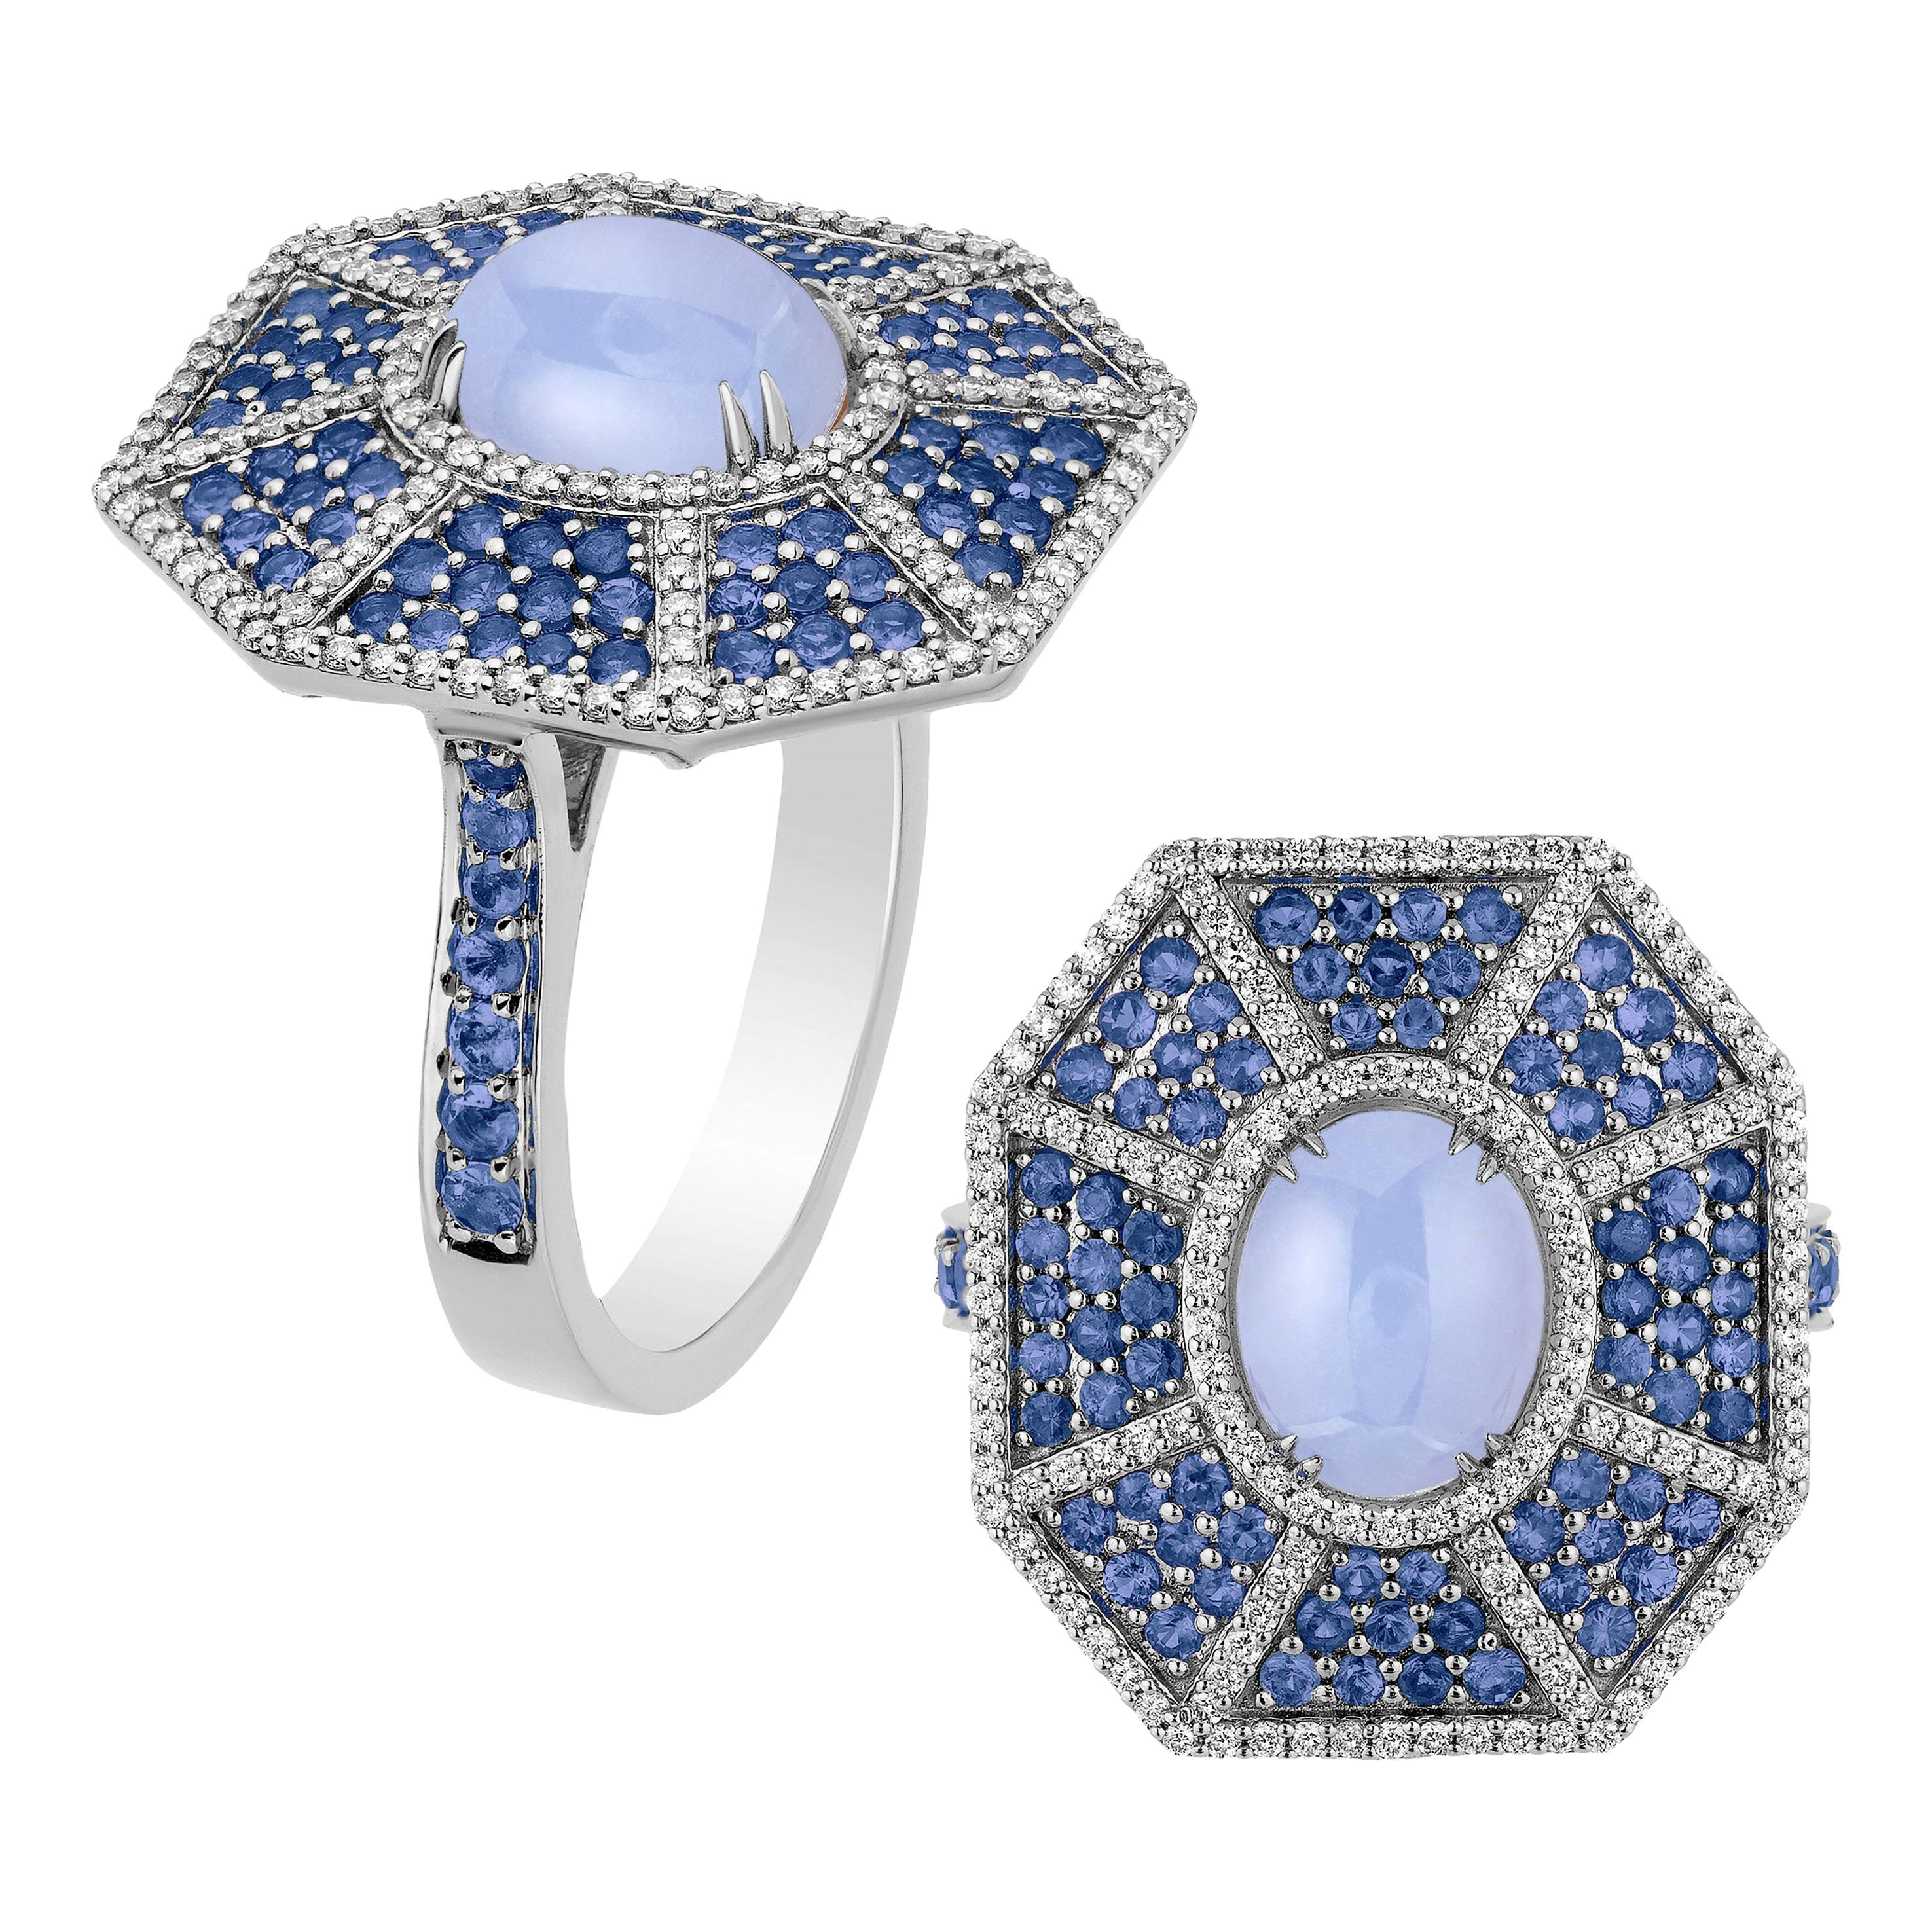 Bague Goshwara octogonale en calcédoine bleue avec saphirs et diamants